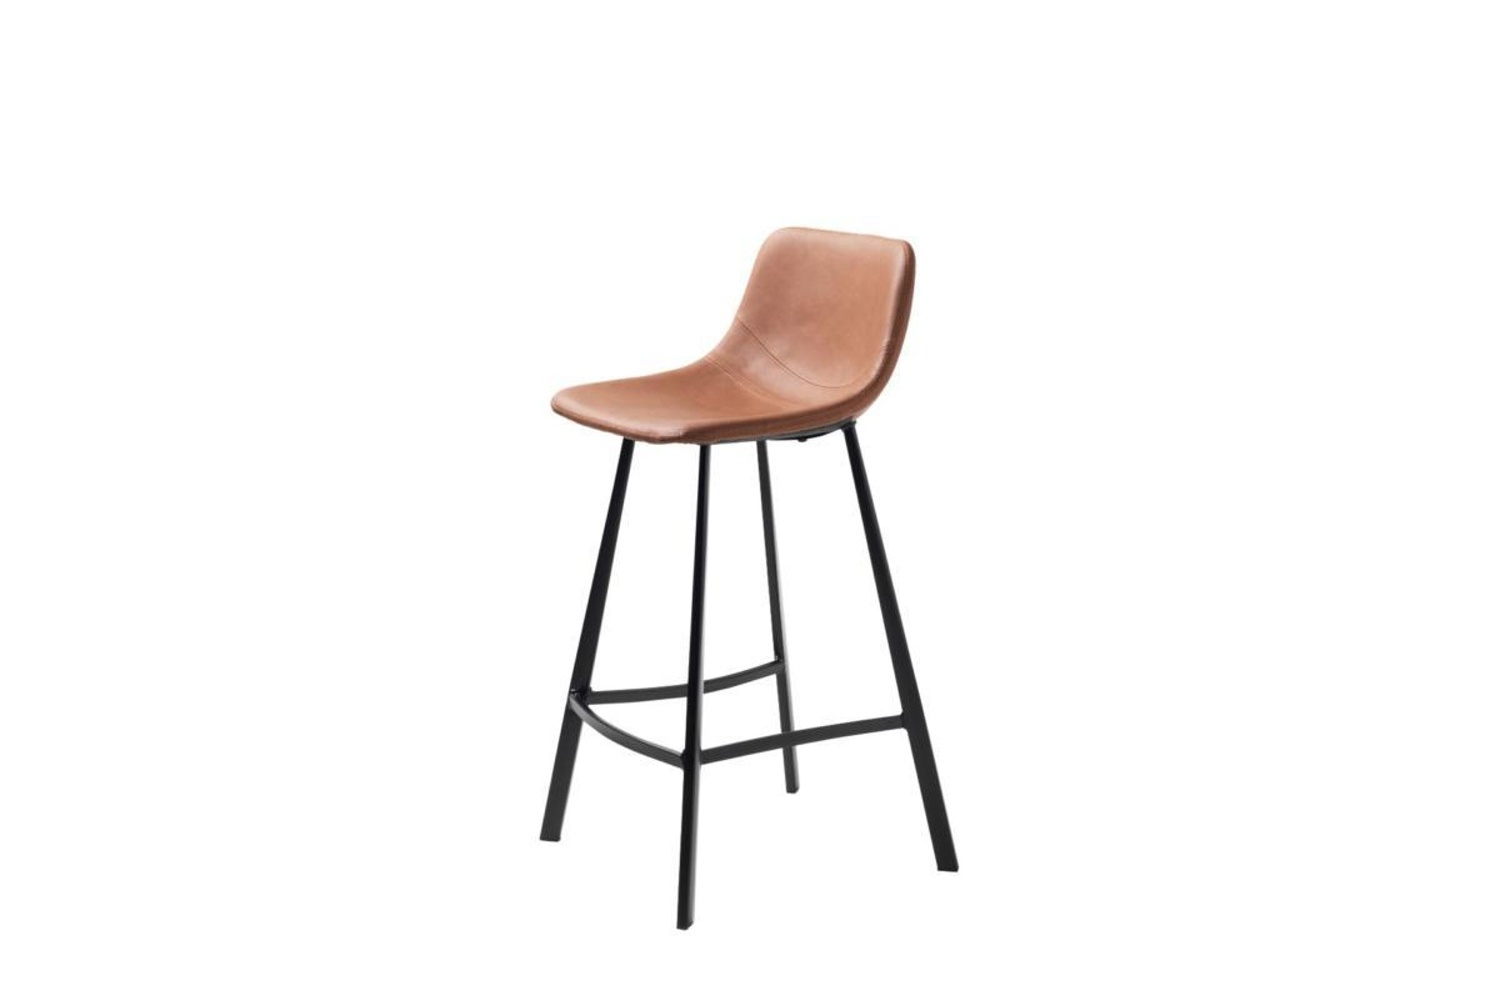 Furniria Dizajnová barová stolička Claudia svetlohnedá